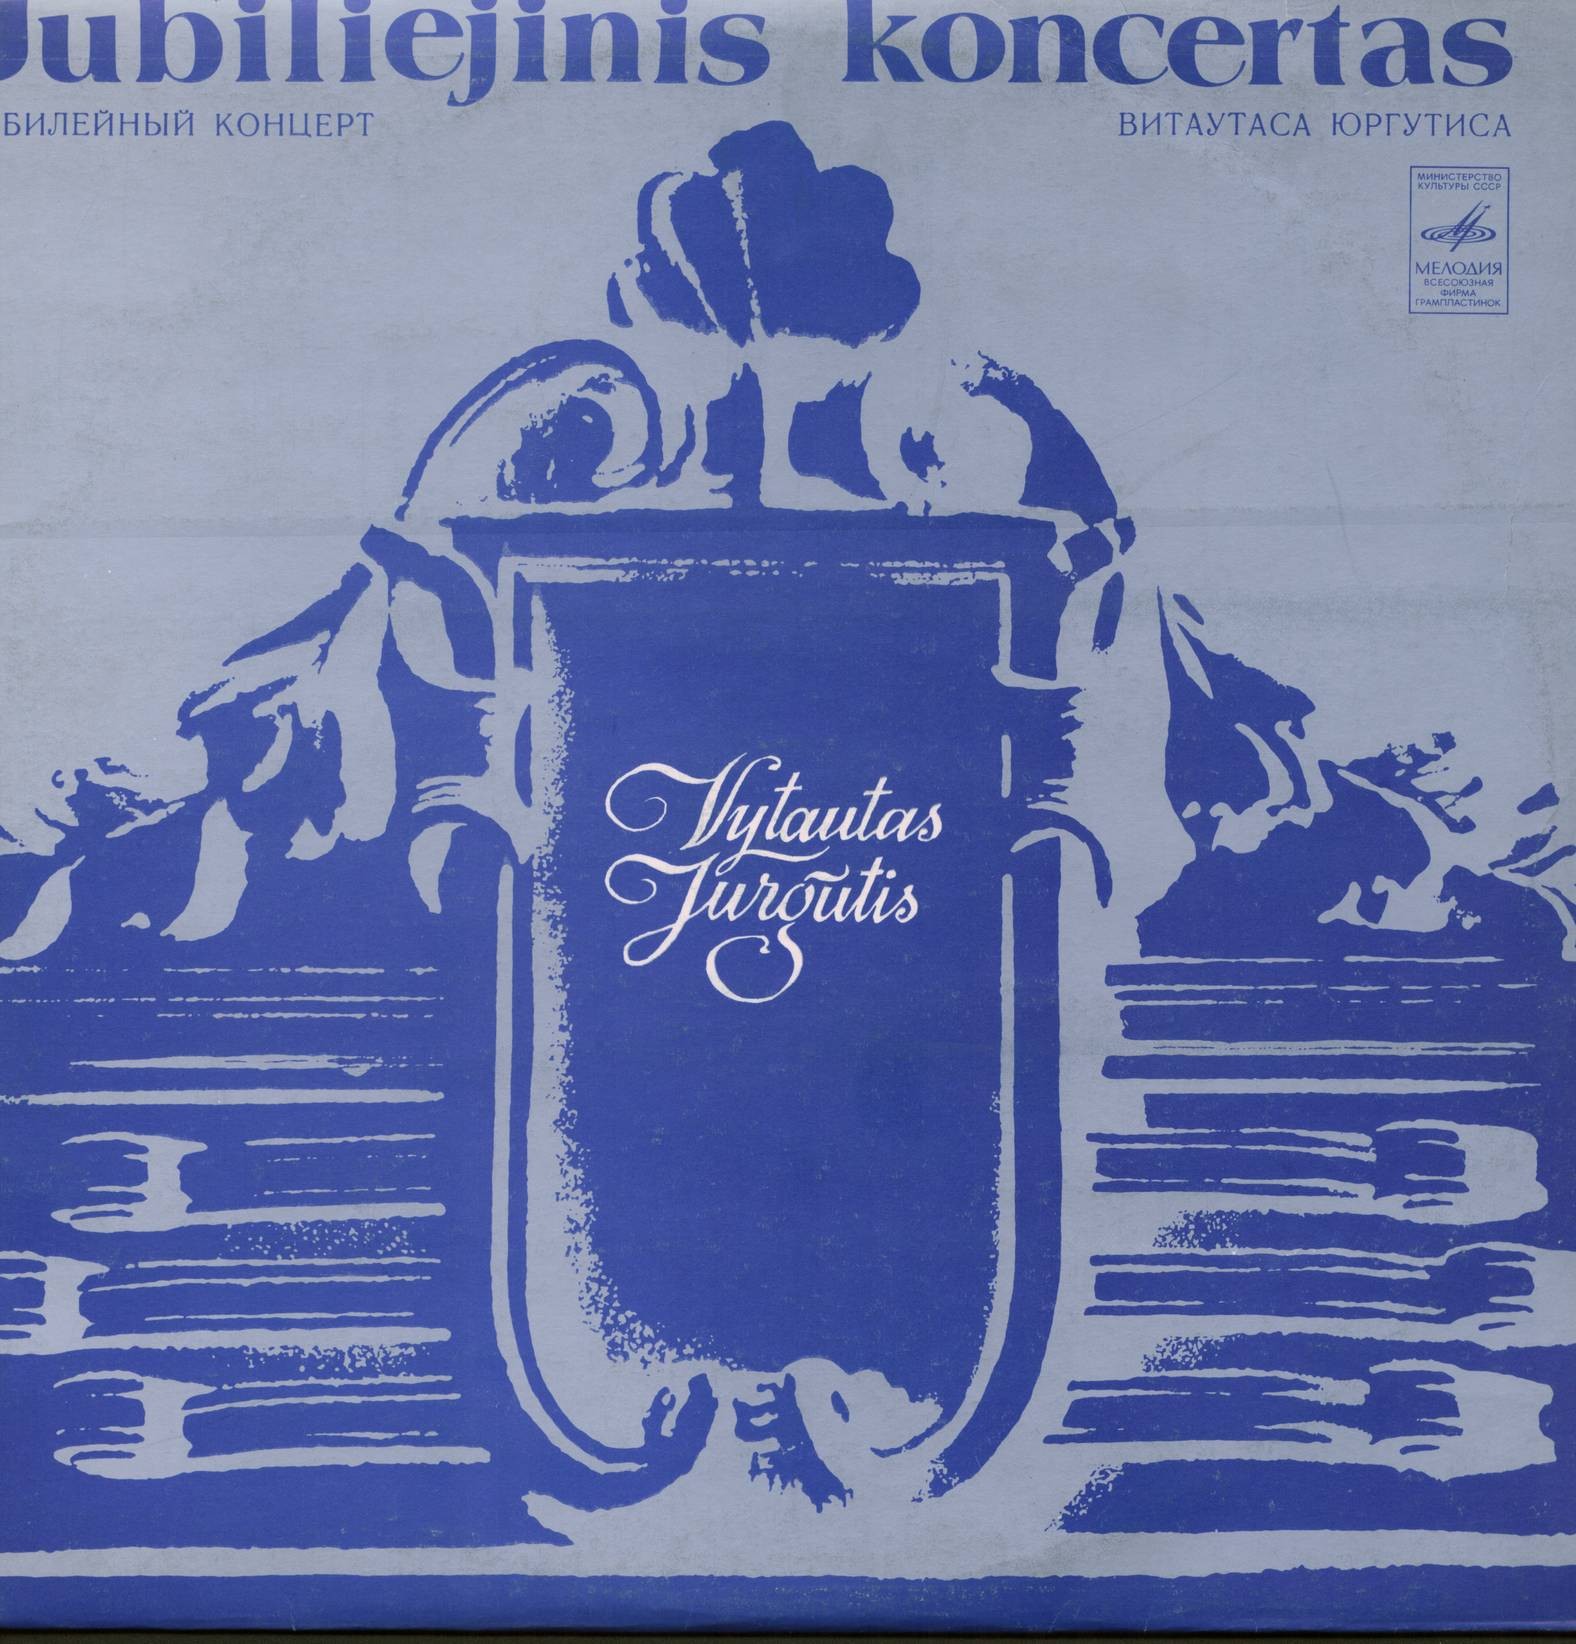 Витаутас ЮРГУТИС (1930): Юбилейный концерт